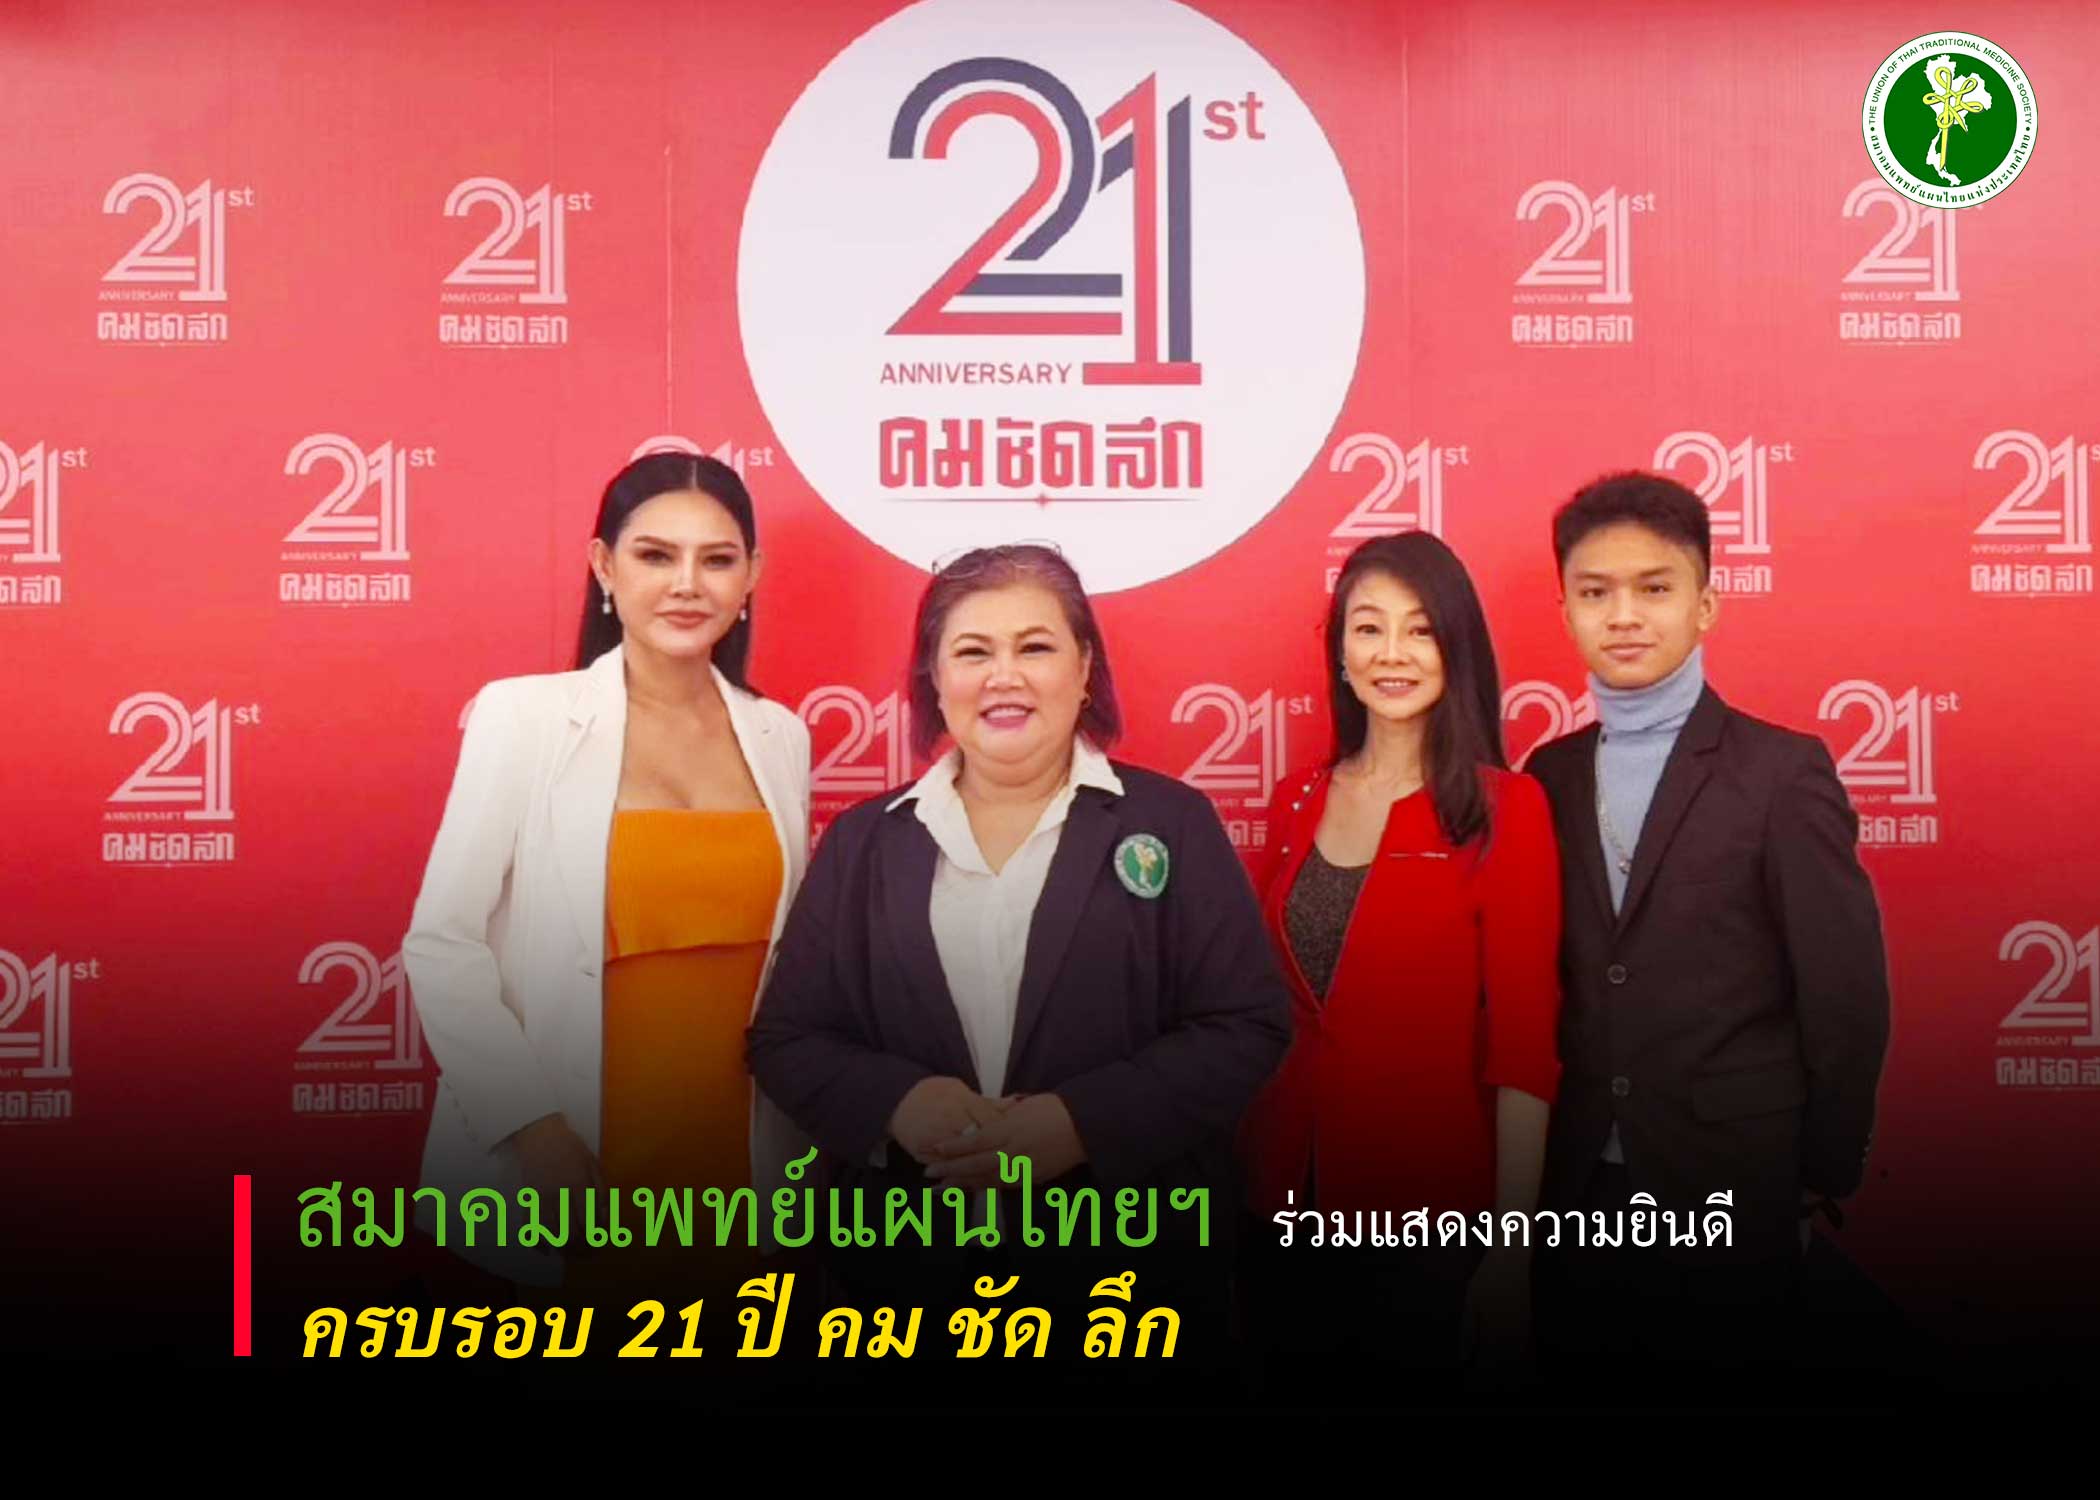 สมาคมแพทย์แผนไทยแห่งประเทศไทย ร่วมแสดงความยินดี 21 ปี คม ชัด ลึก